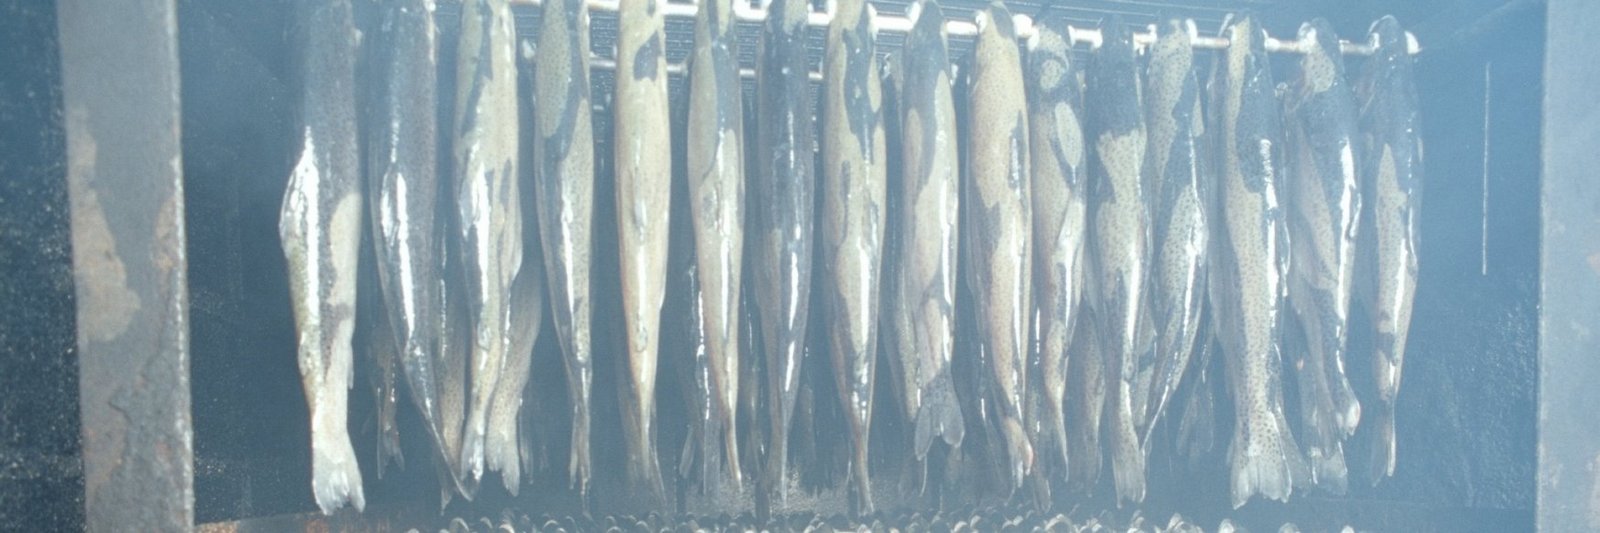 Geräucherter Fisch hängt im Räucherofen.